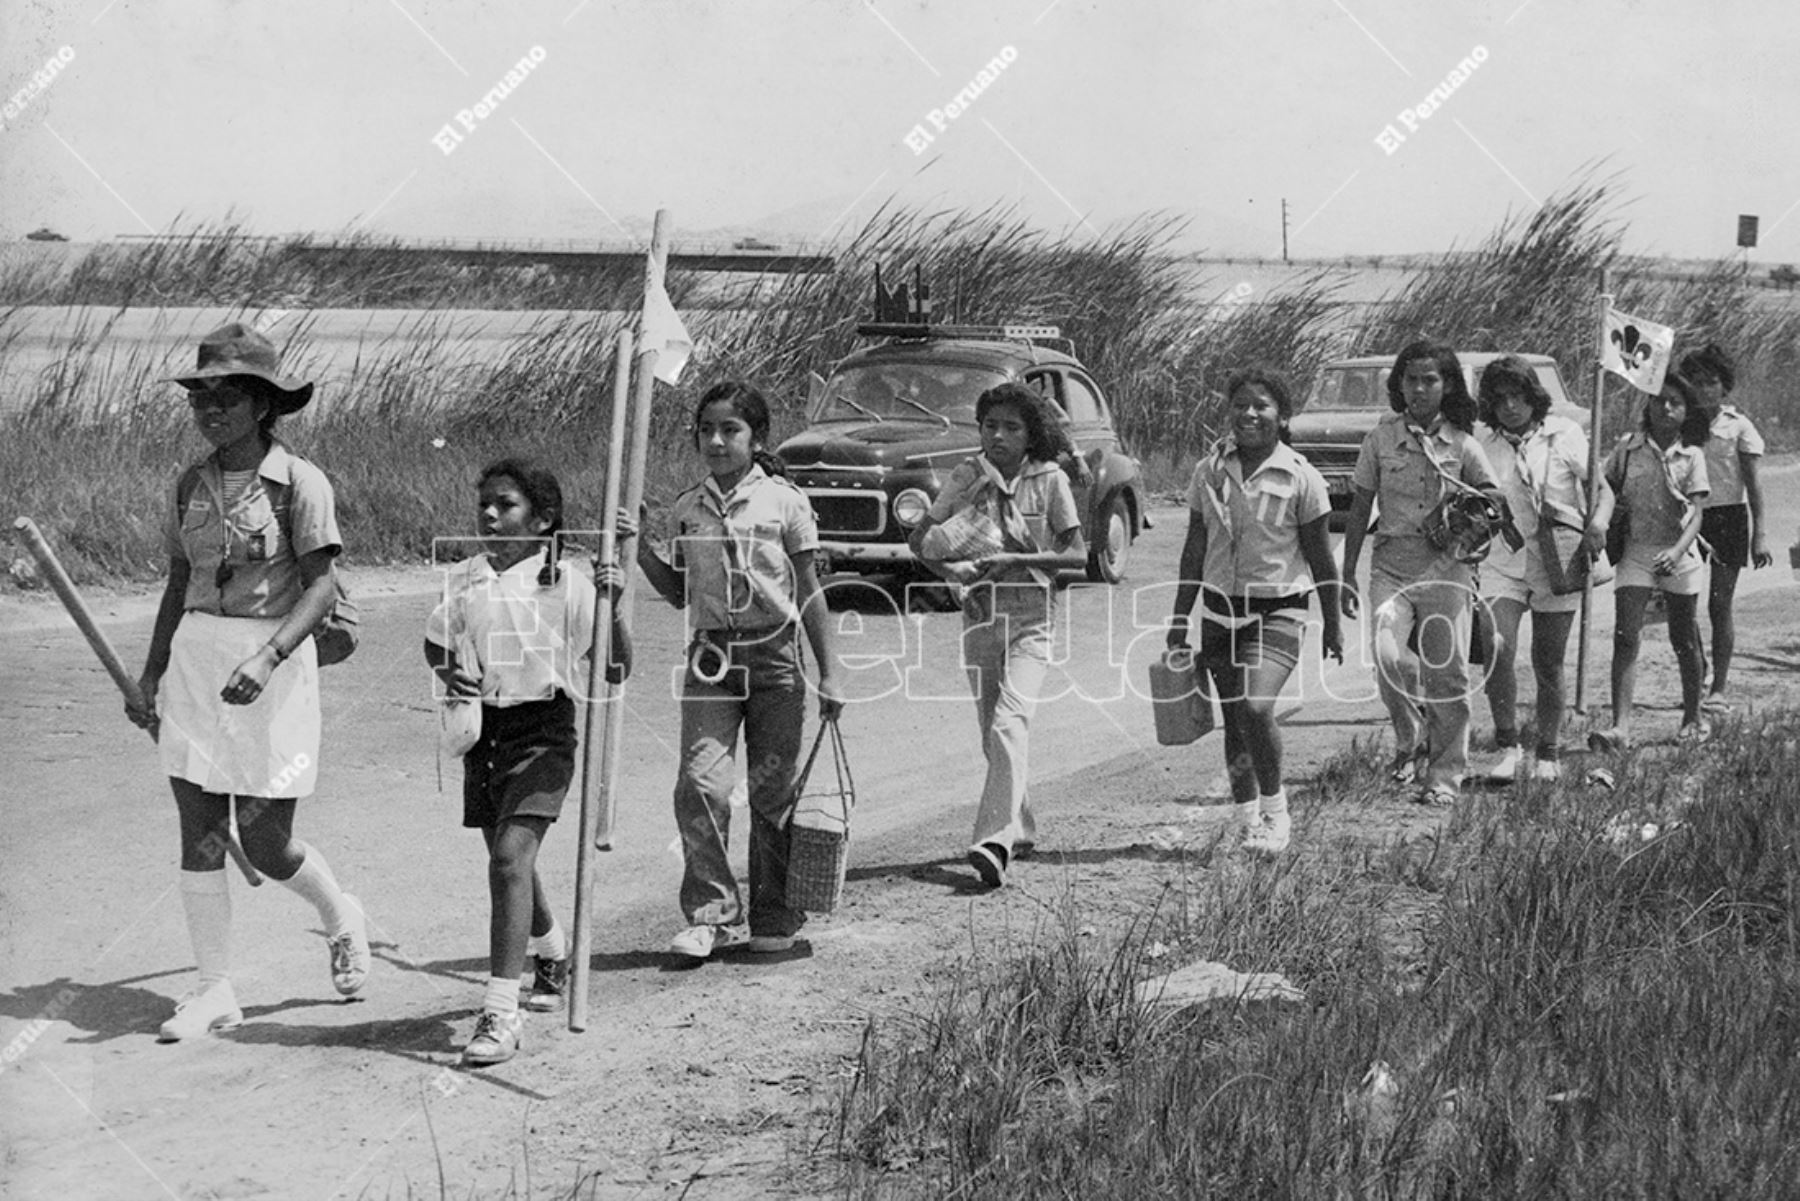 Hoy jueves 25 de mayo, los Scouts del Perú, cumplen 112 años de fundación y por primera vez en su historia tienen una mujer presidenta como su máxima autoridad institucional. Lima - 12 marzo 1978 / Excursión de boy scouts en San Juan de Miraflores. Foto: Archivo Histórico de El Peruano